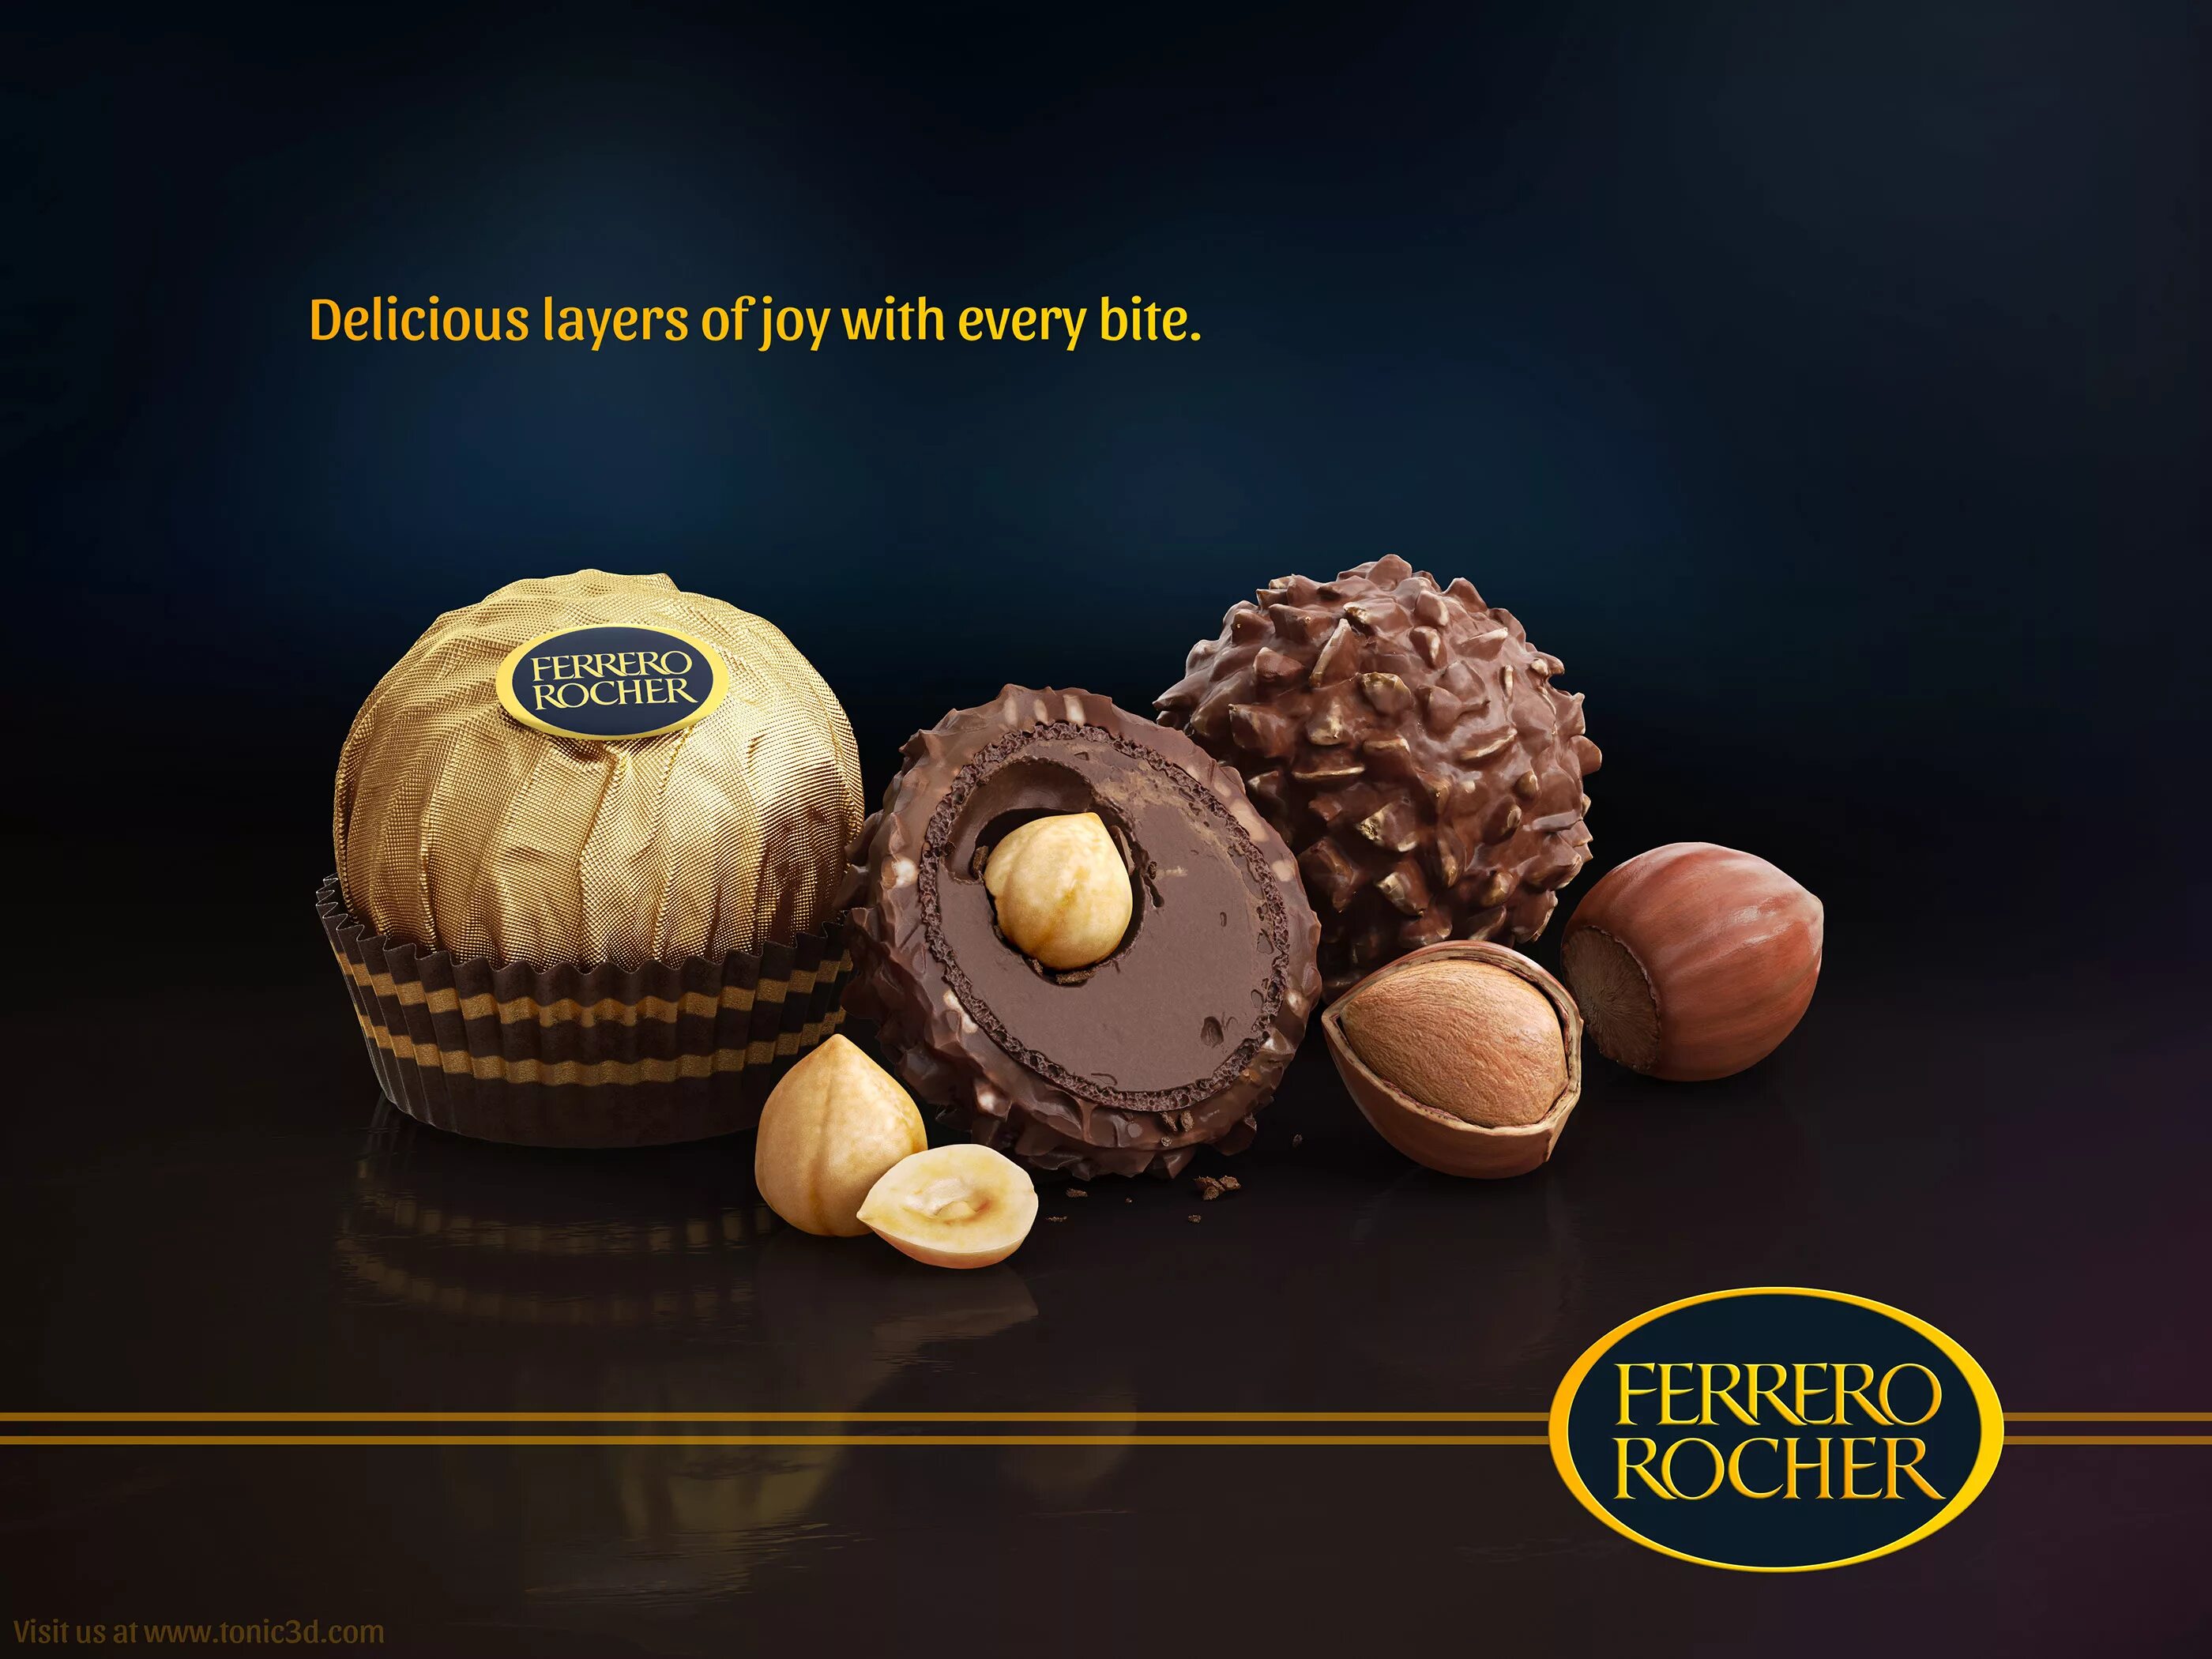 Реклама ферреро роше. Шоколад Ферреро Роше. Ferrero Rocher шоколад. Ferrero Rocher конфеты реклама. Ферреро Роше конфеты темные.